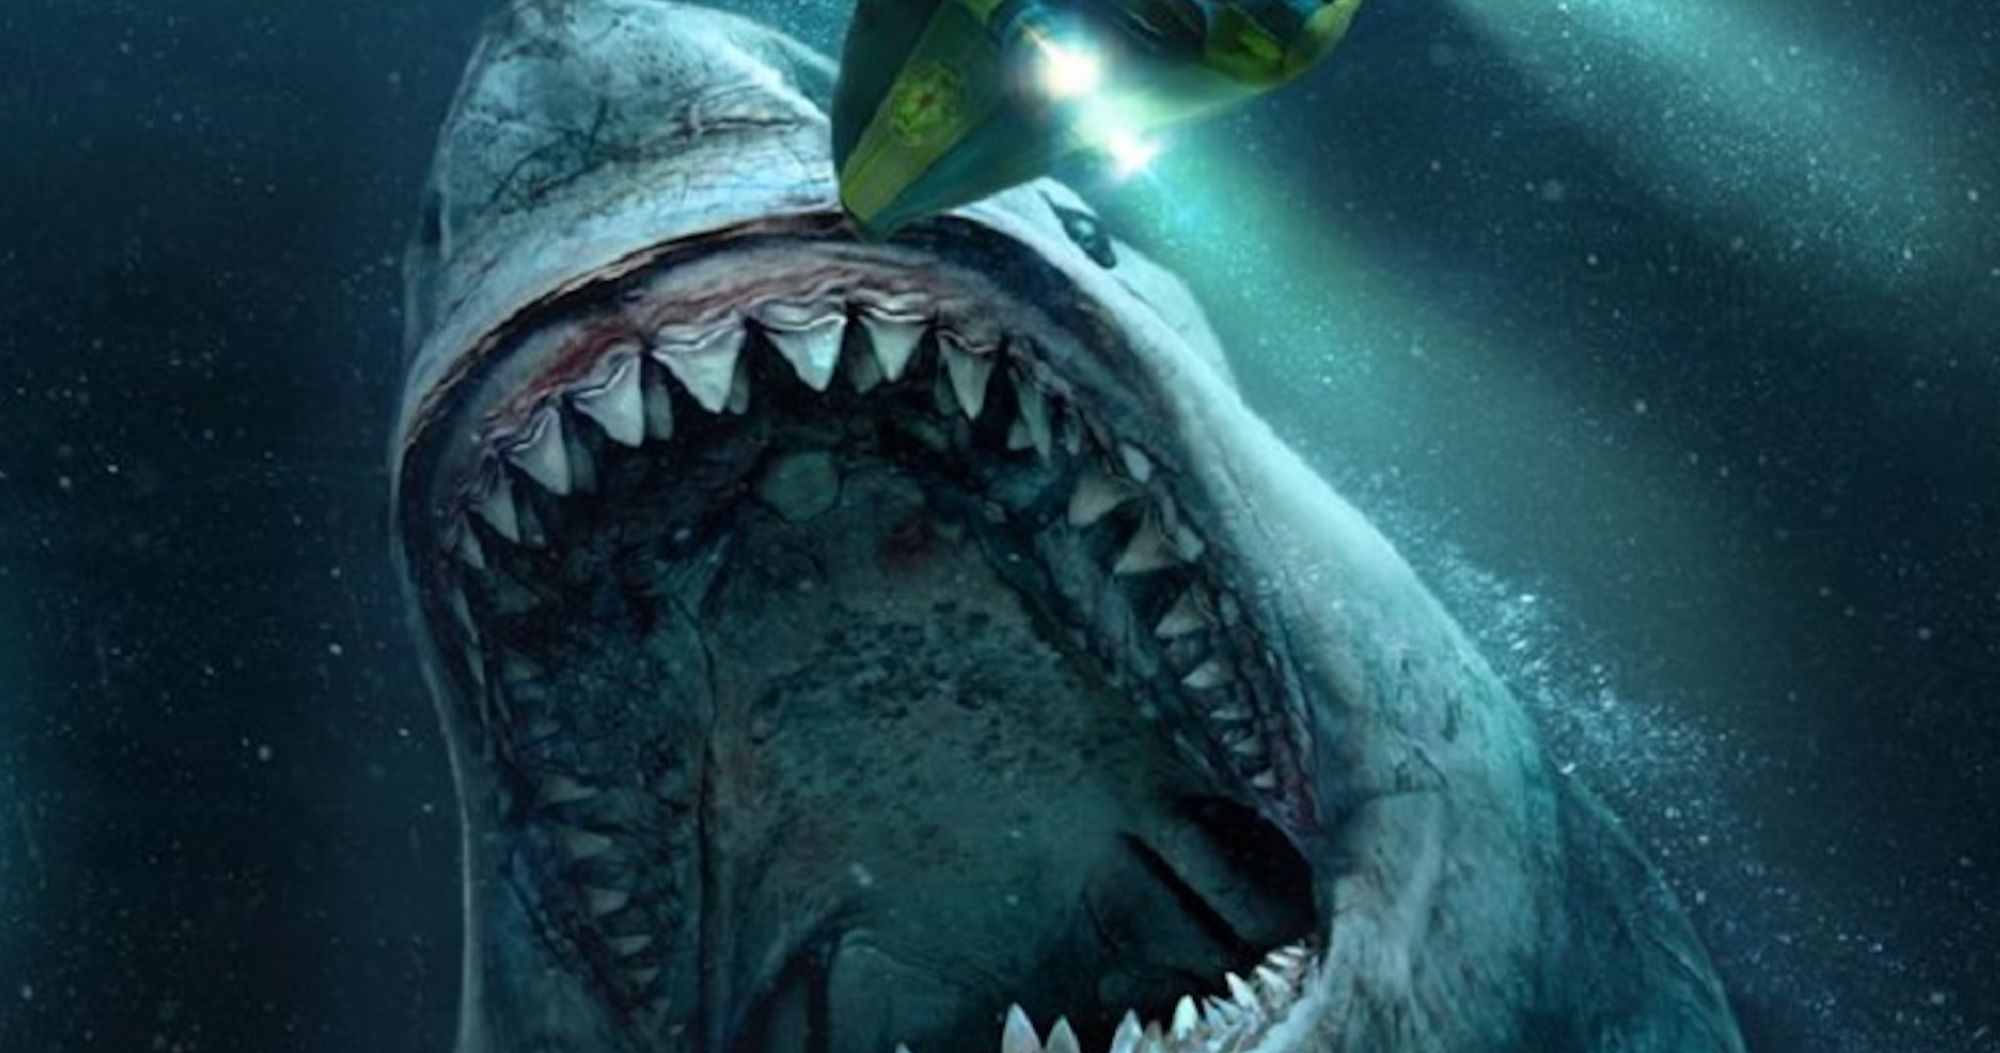 The Meg 2 Director Teases More Than One Giant Shark and Massive Megalodon Mayhem